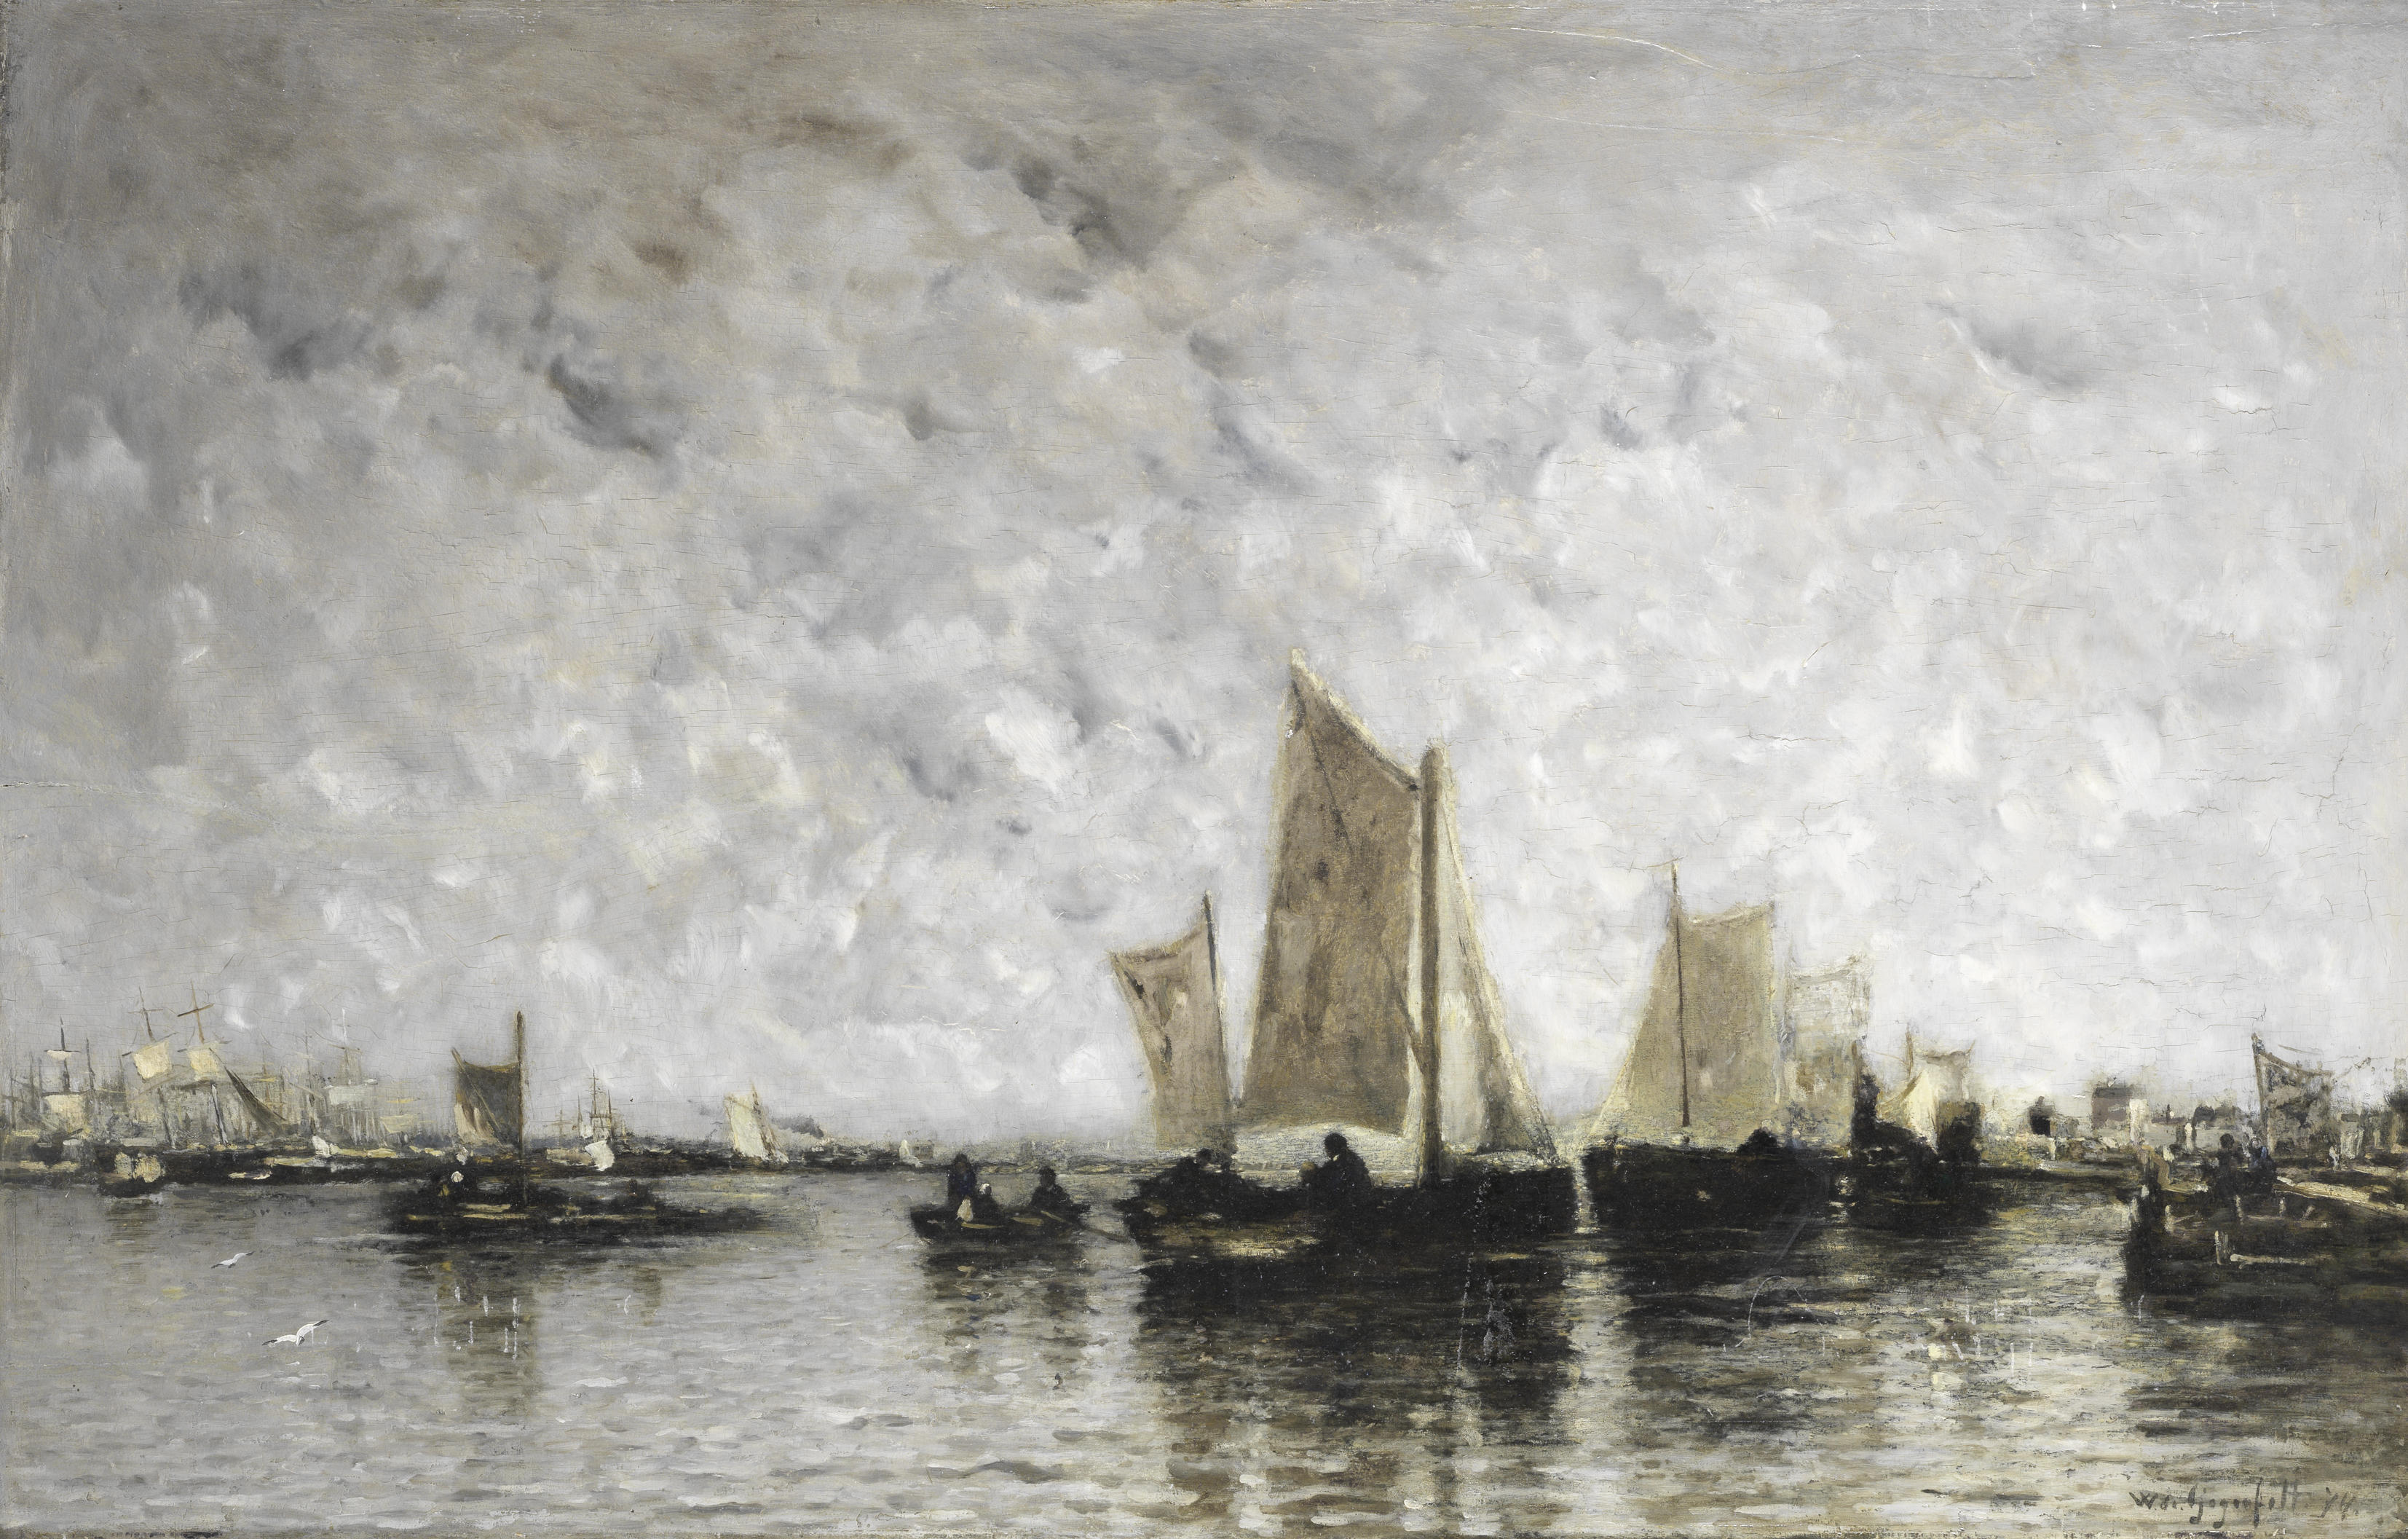 Wilhelm von Gegerfelt - Sail and steam vessels in an estuary